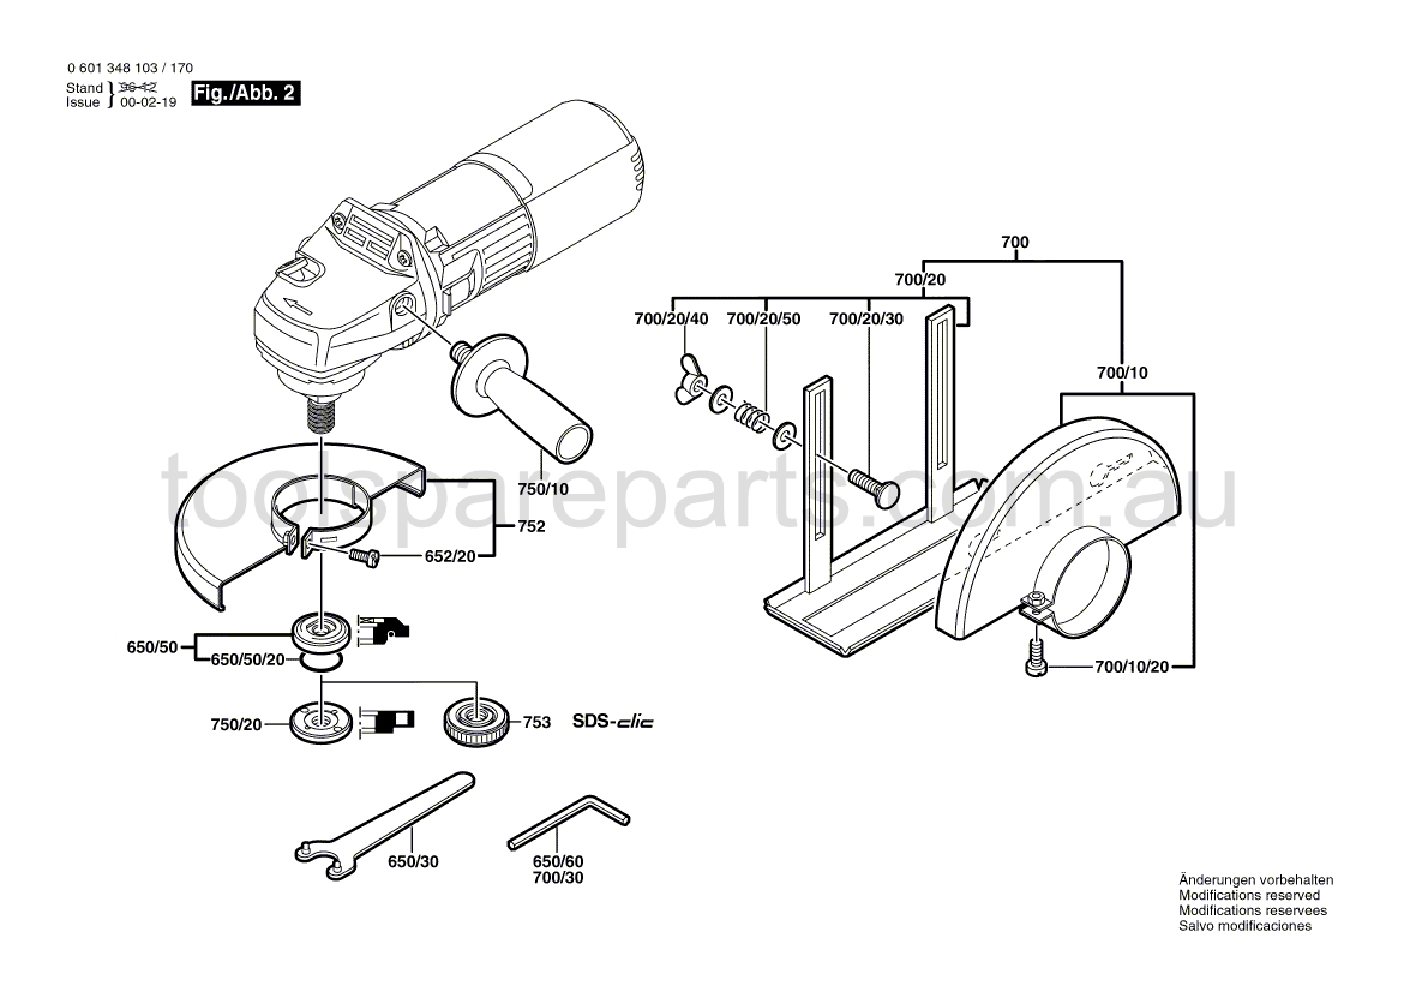 Bosch GWS 7-125 0601348137  Diagram 2